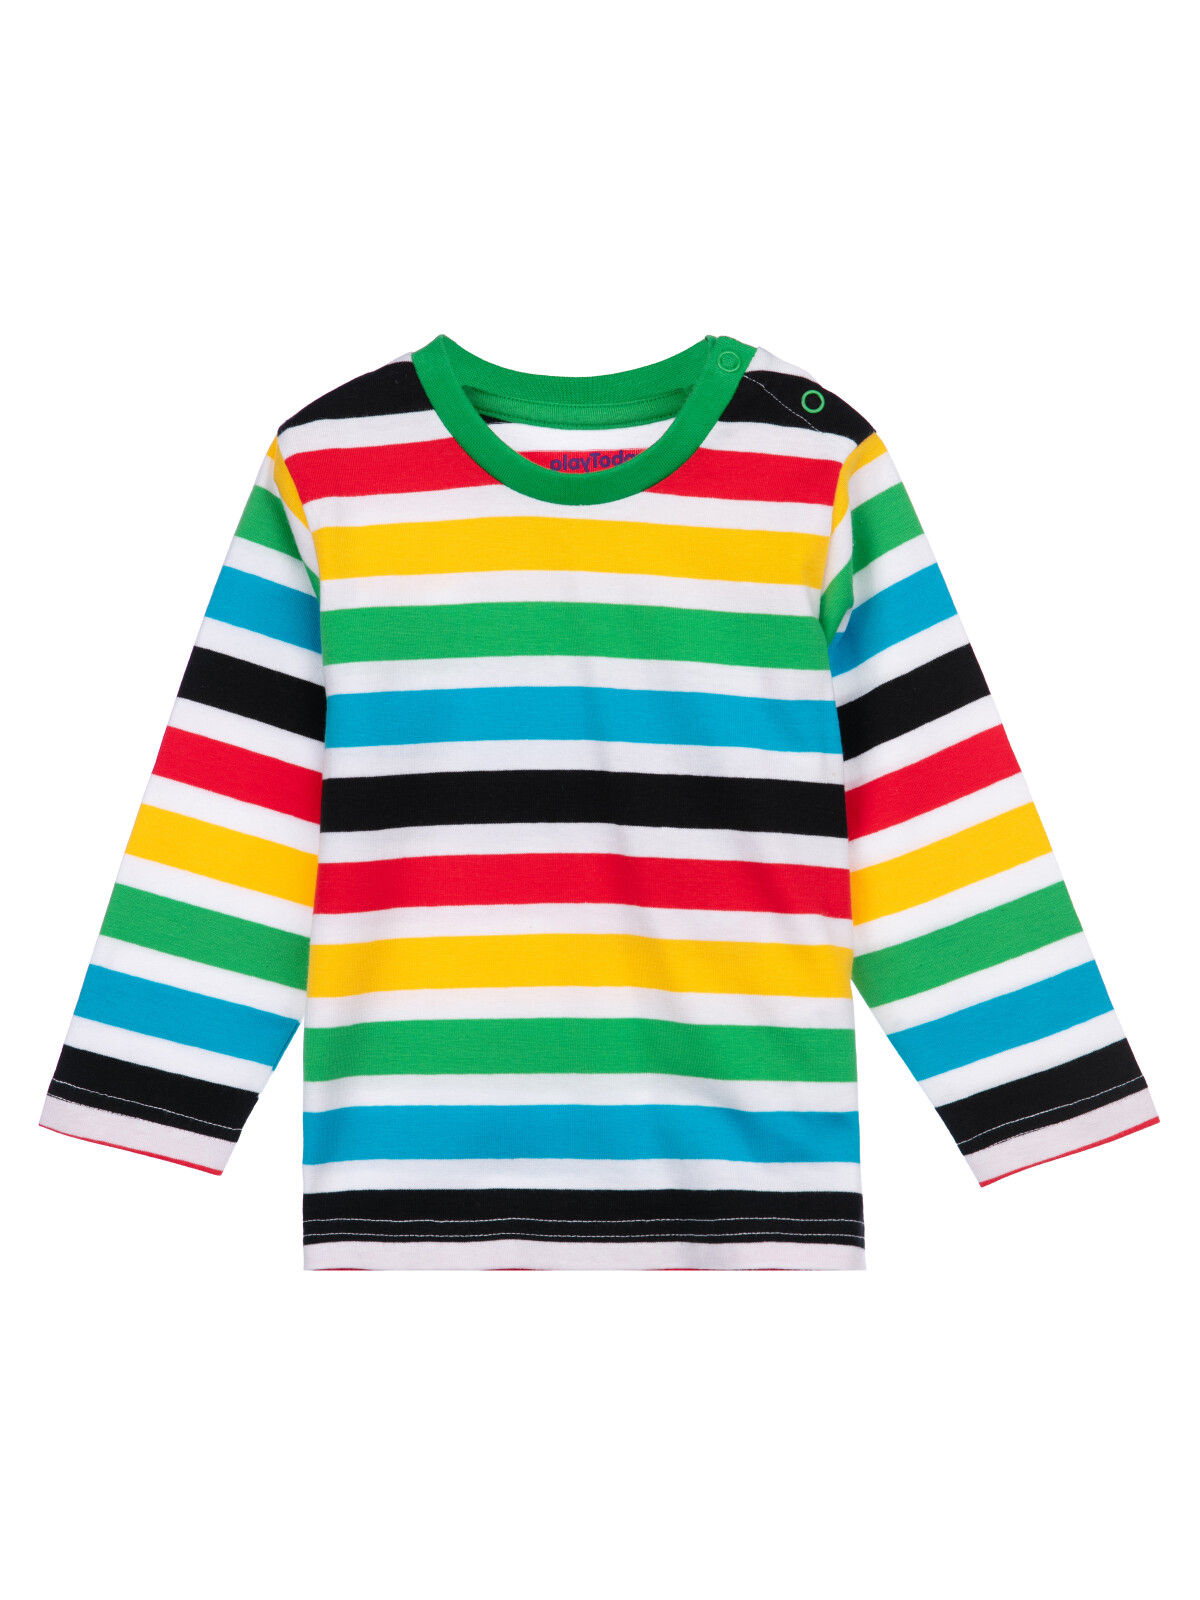 Фуфайка (футболка с длинными рукавами) PlayToday 12419105, разноцветный, 80